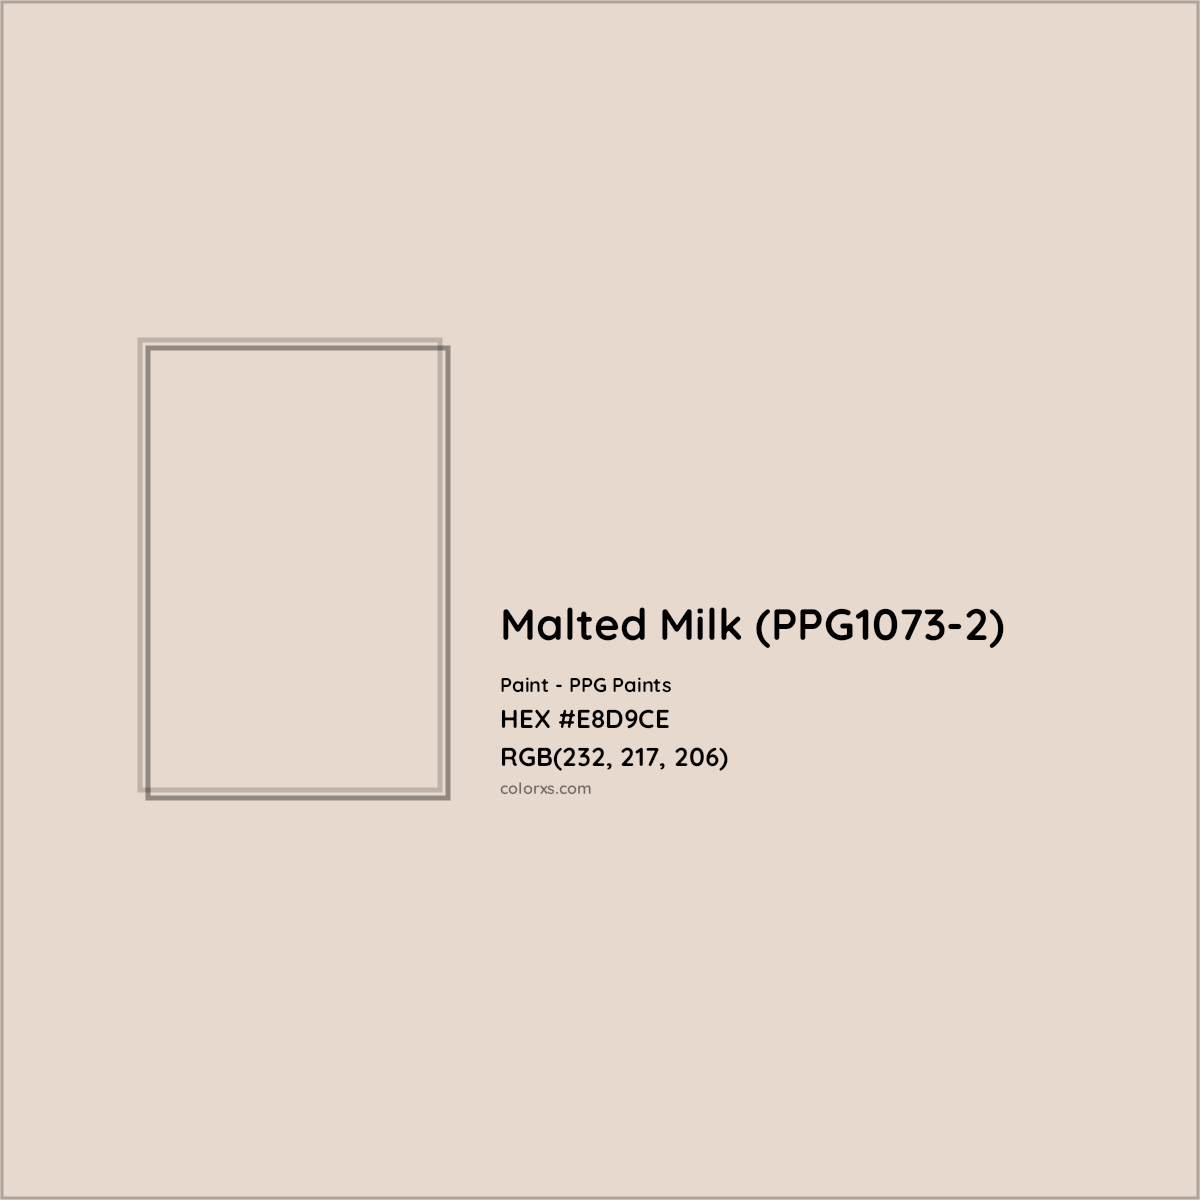 HEX #E8D9CE Malted Milk (PPG1073-2) Paint PPG Paints - Color Code